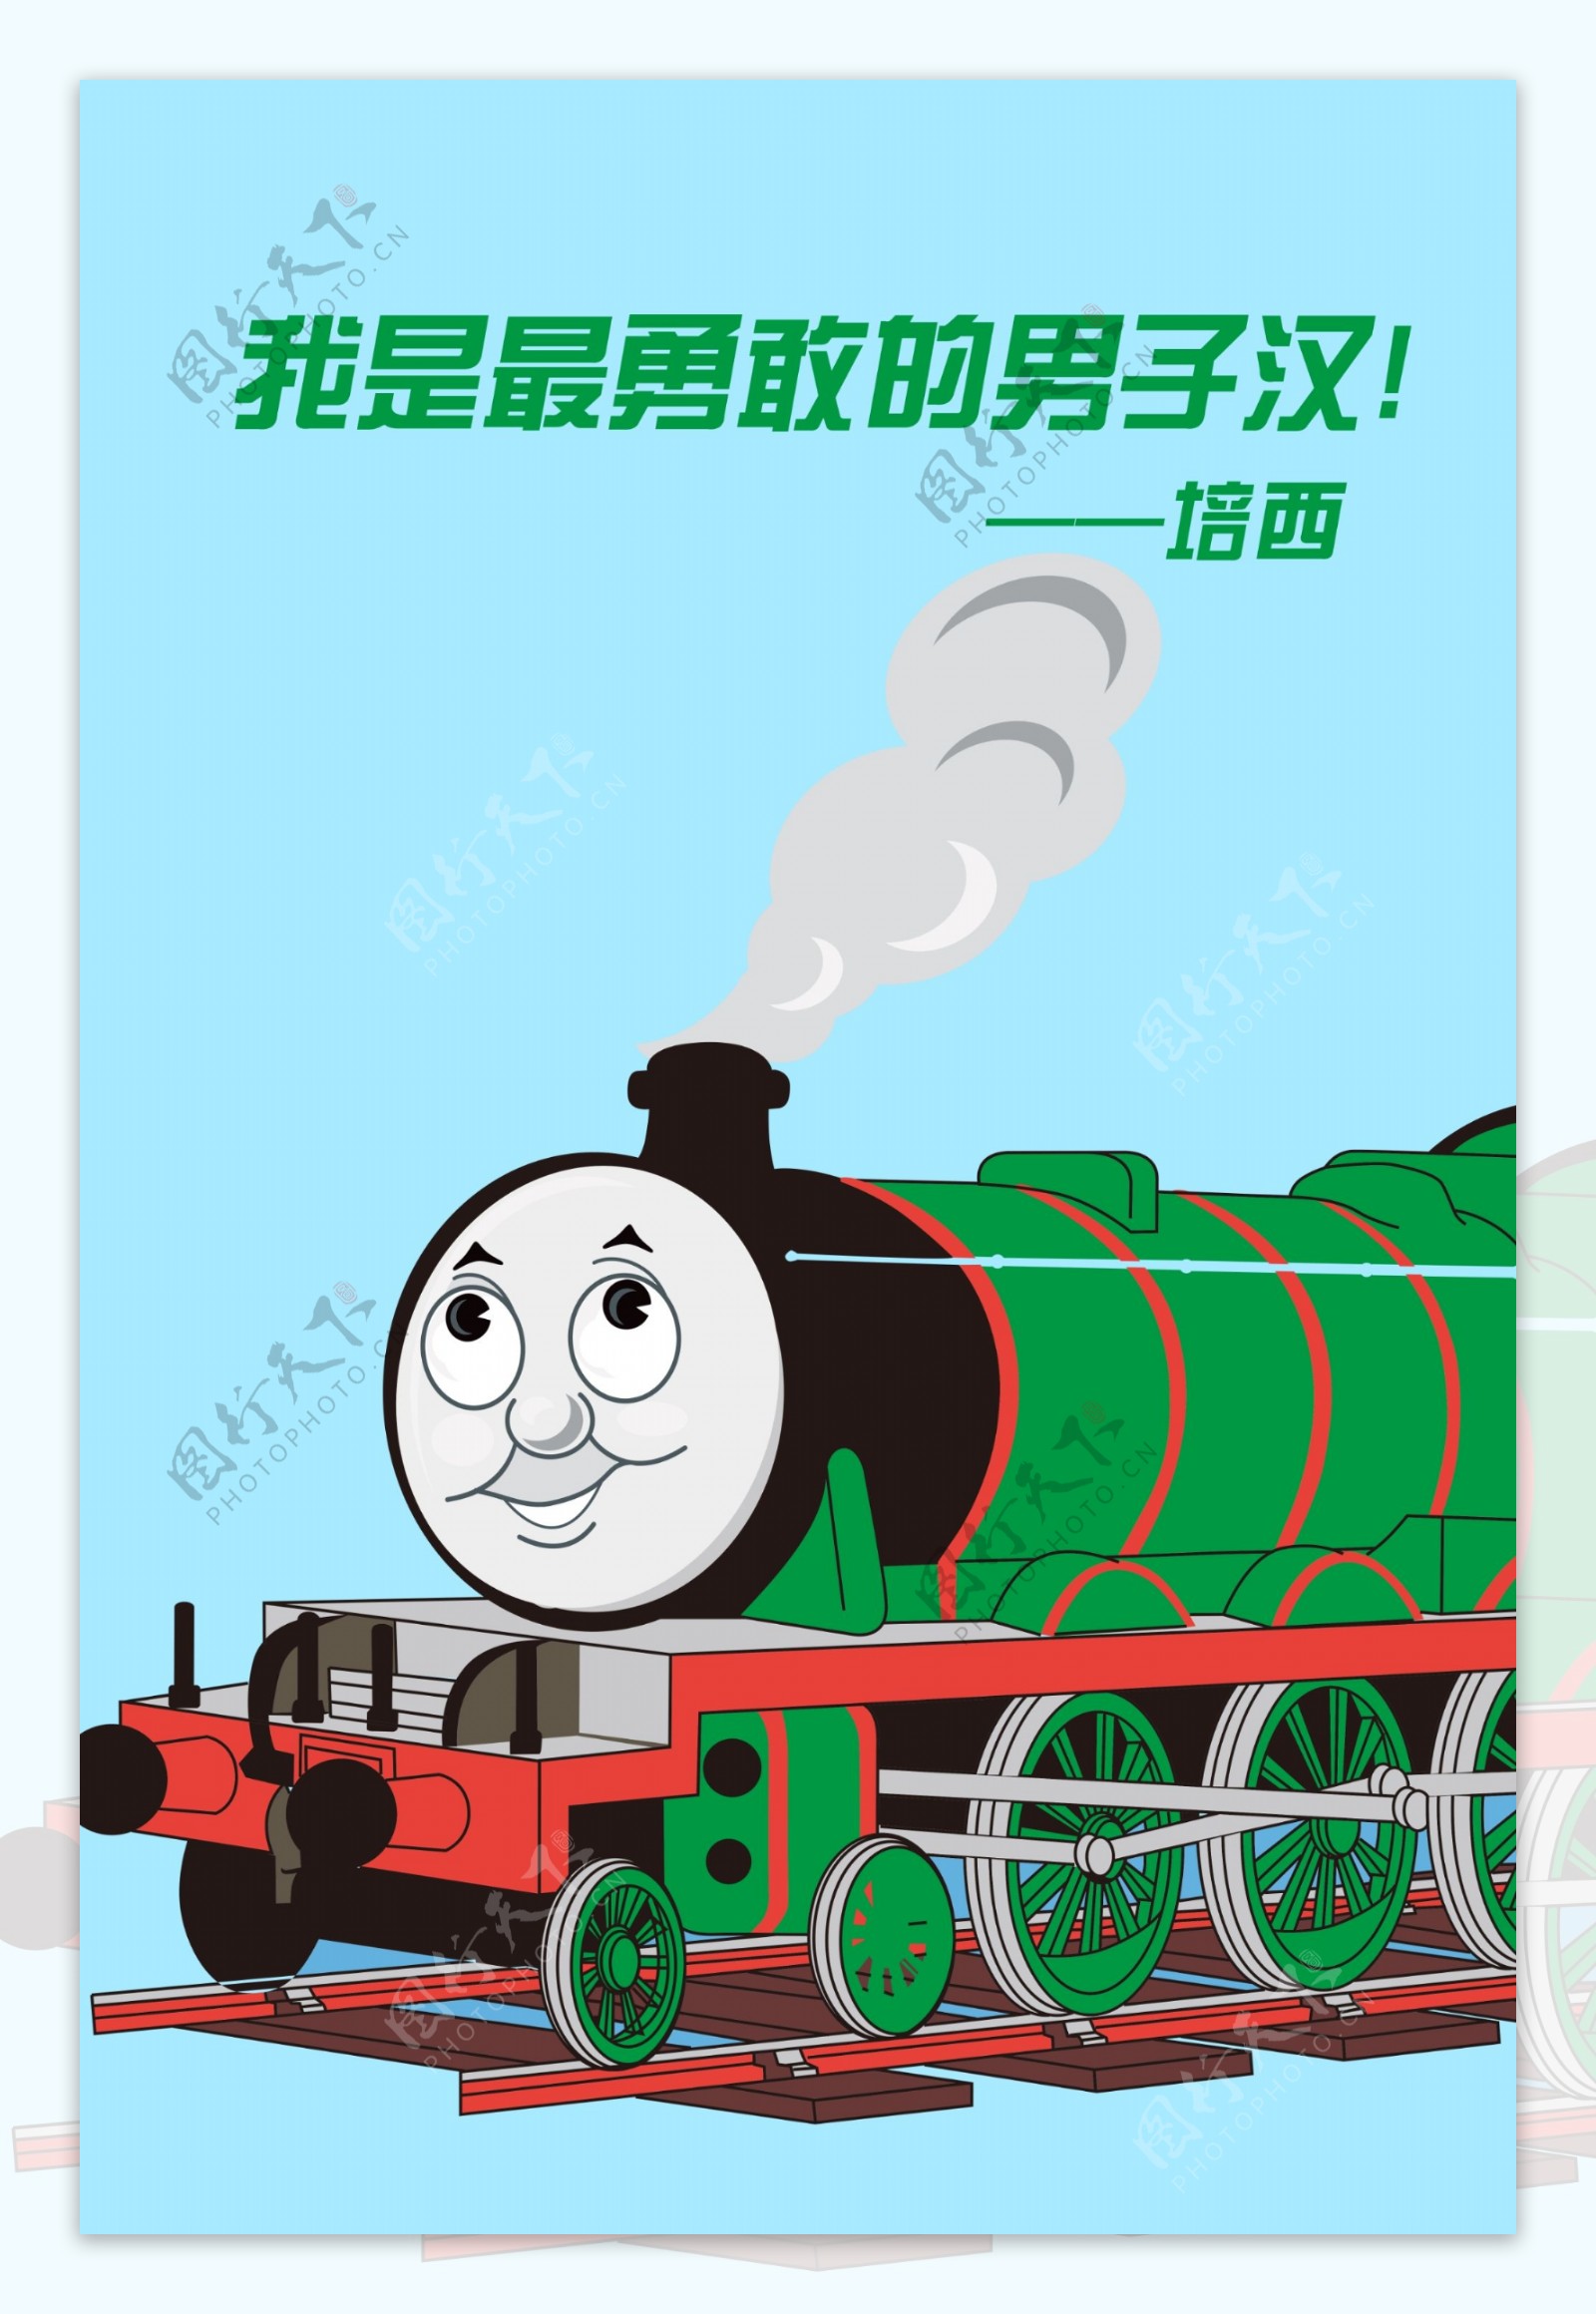 托马斯小火车高登绿色